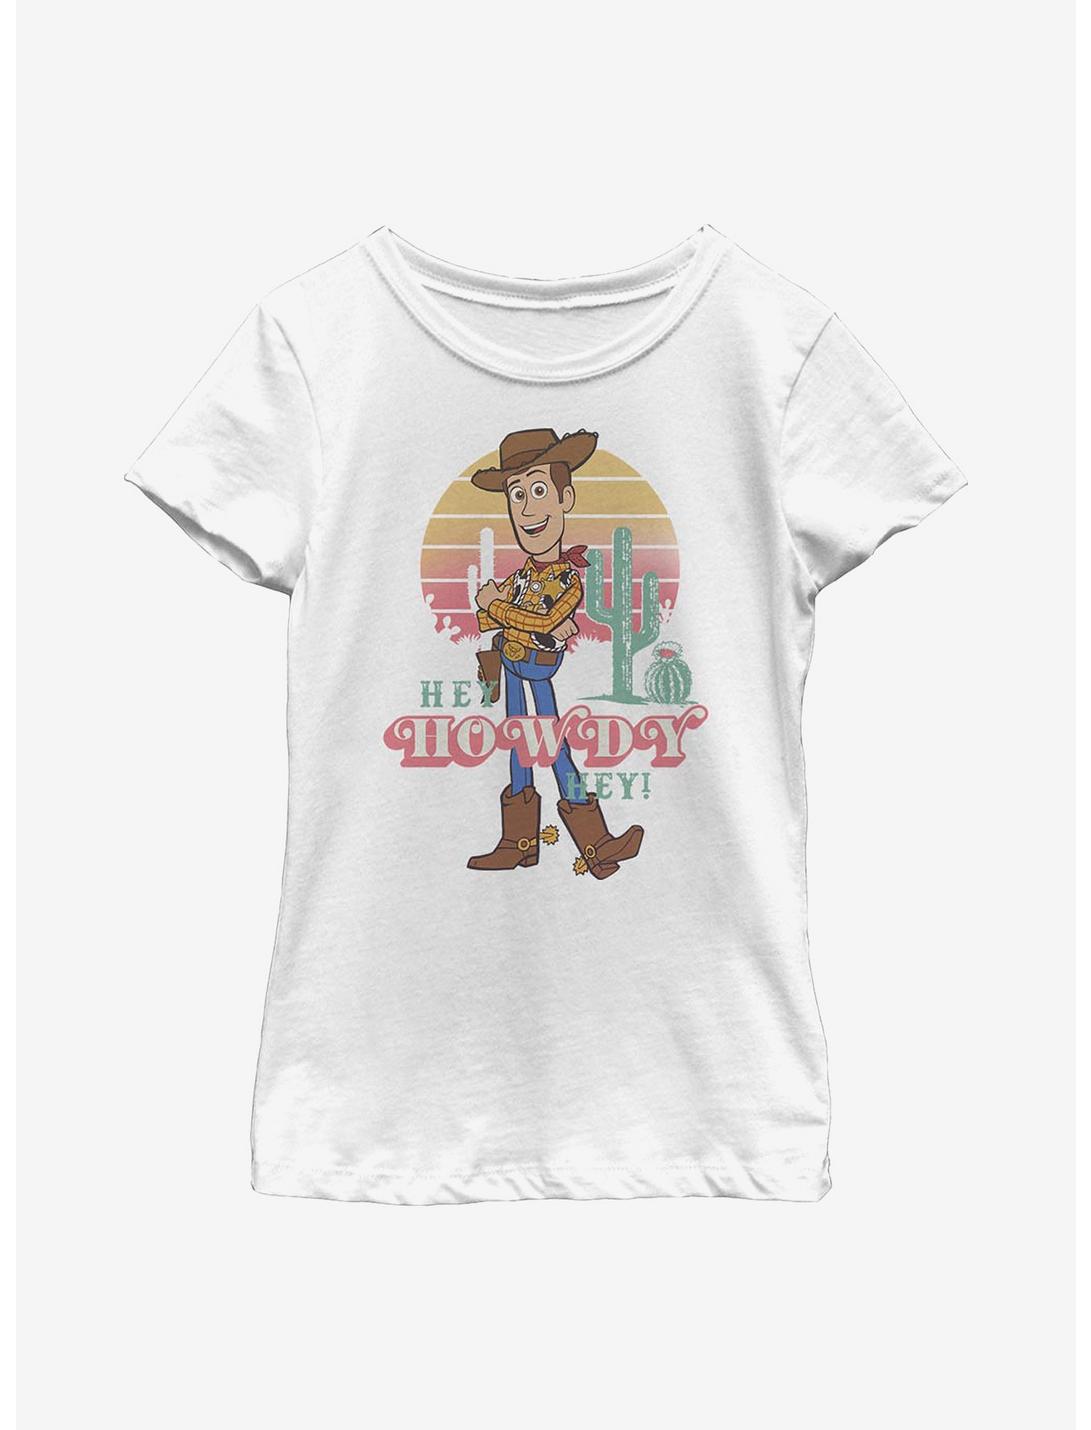 Disney Pixar Toy Story 4 Hey Howdy Youth Girls T-Shirt, WHITE, hi-res